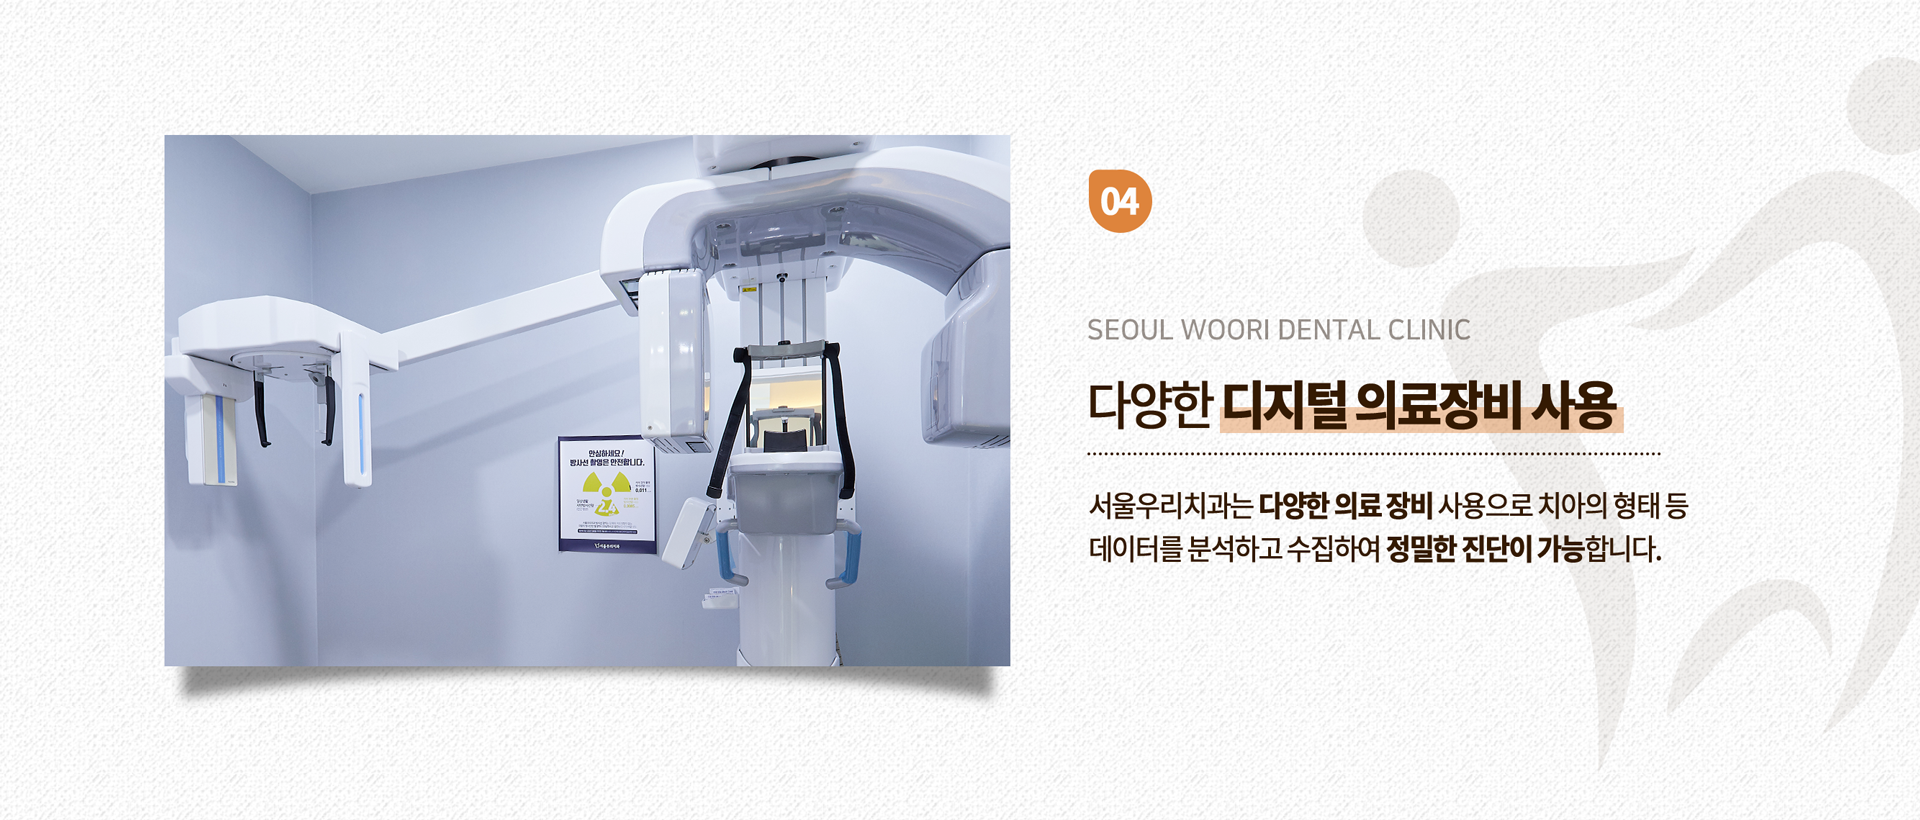 다양한-디지털-의료장비-사용-서울우리치과는-다양한-의료-장비-사용으로-치아의-형태-등-데이터를-분석하고-수집하여-정밀한-진단이-가능합니다